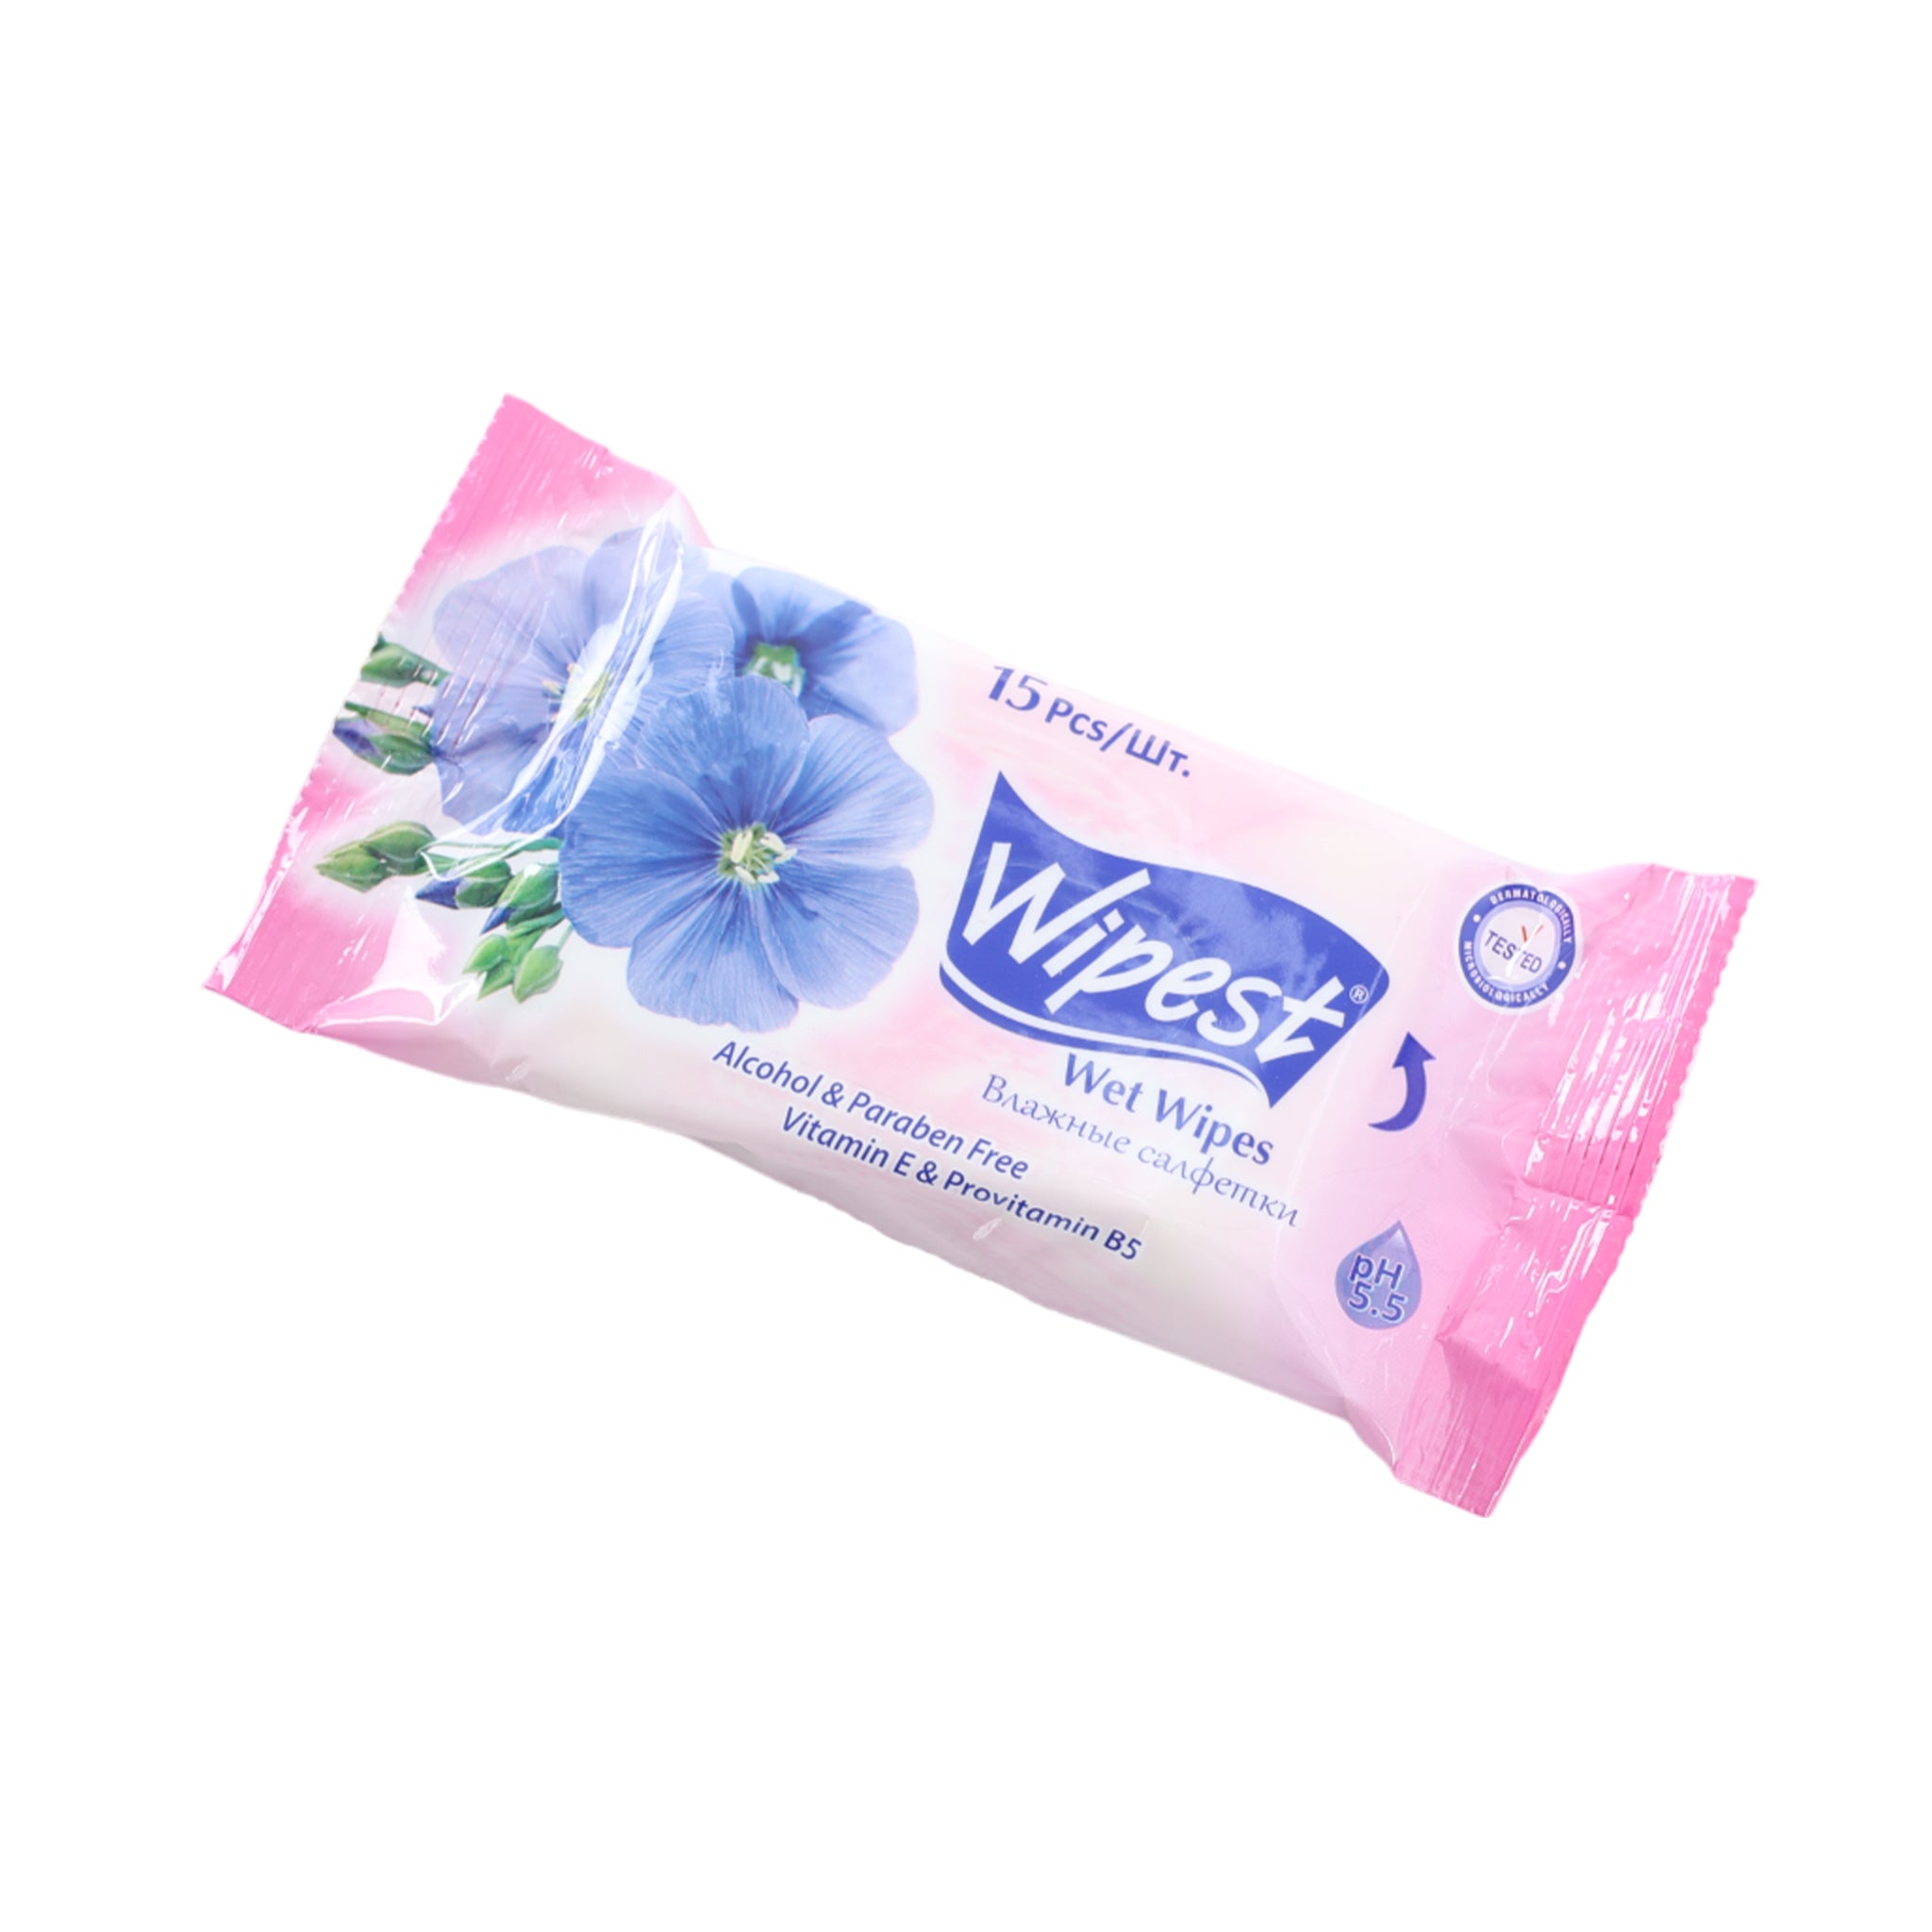 Wipest Wet Wipes 15 Pieces